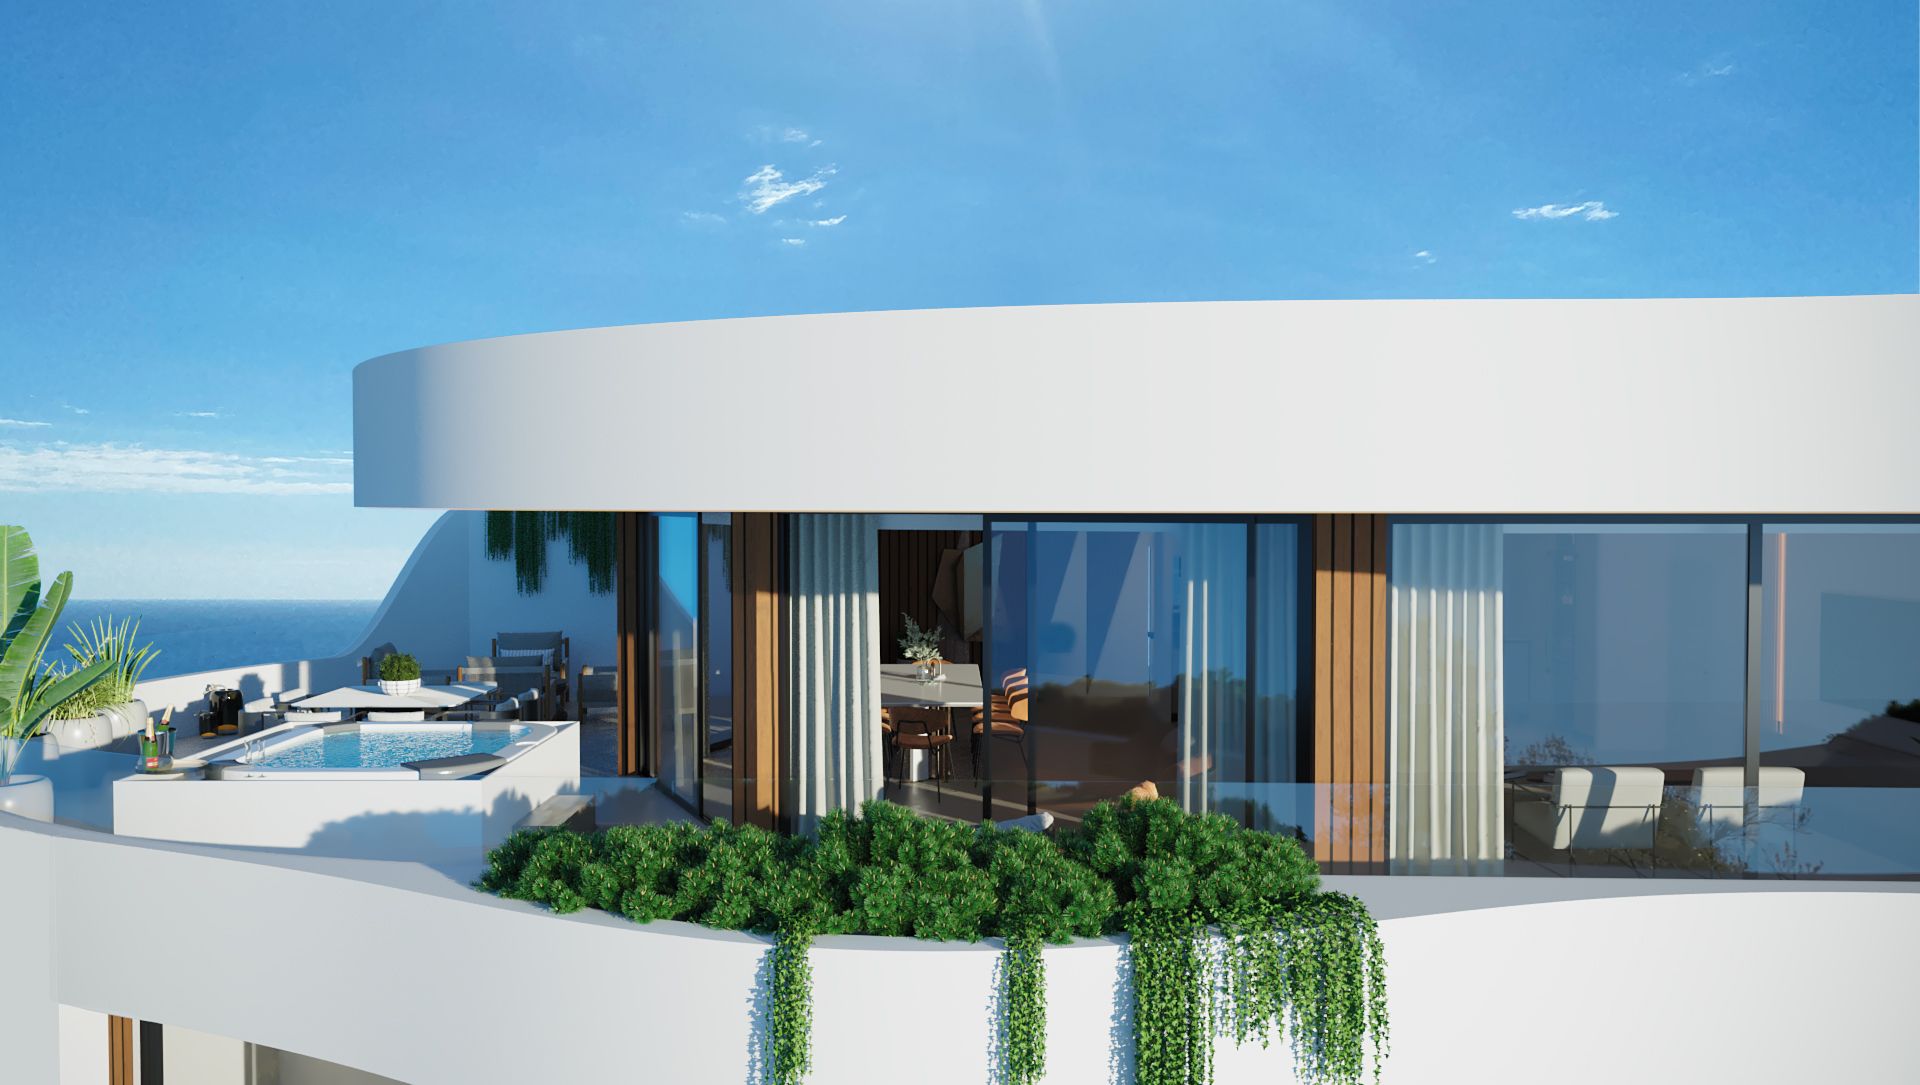 La promotora Mar Delux presenta un resort en La Herradura para turistas de alto poder adquisitivo.
